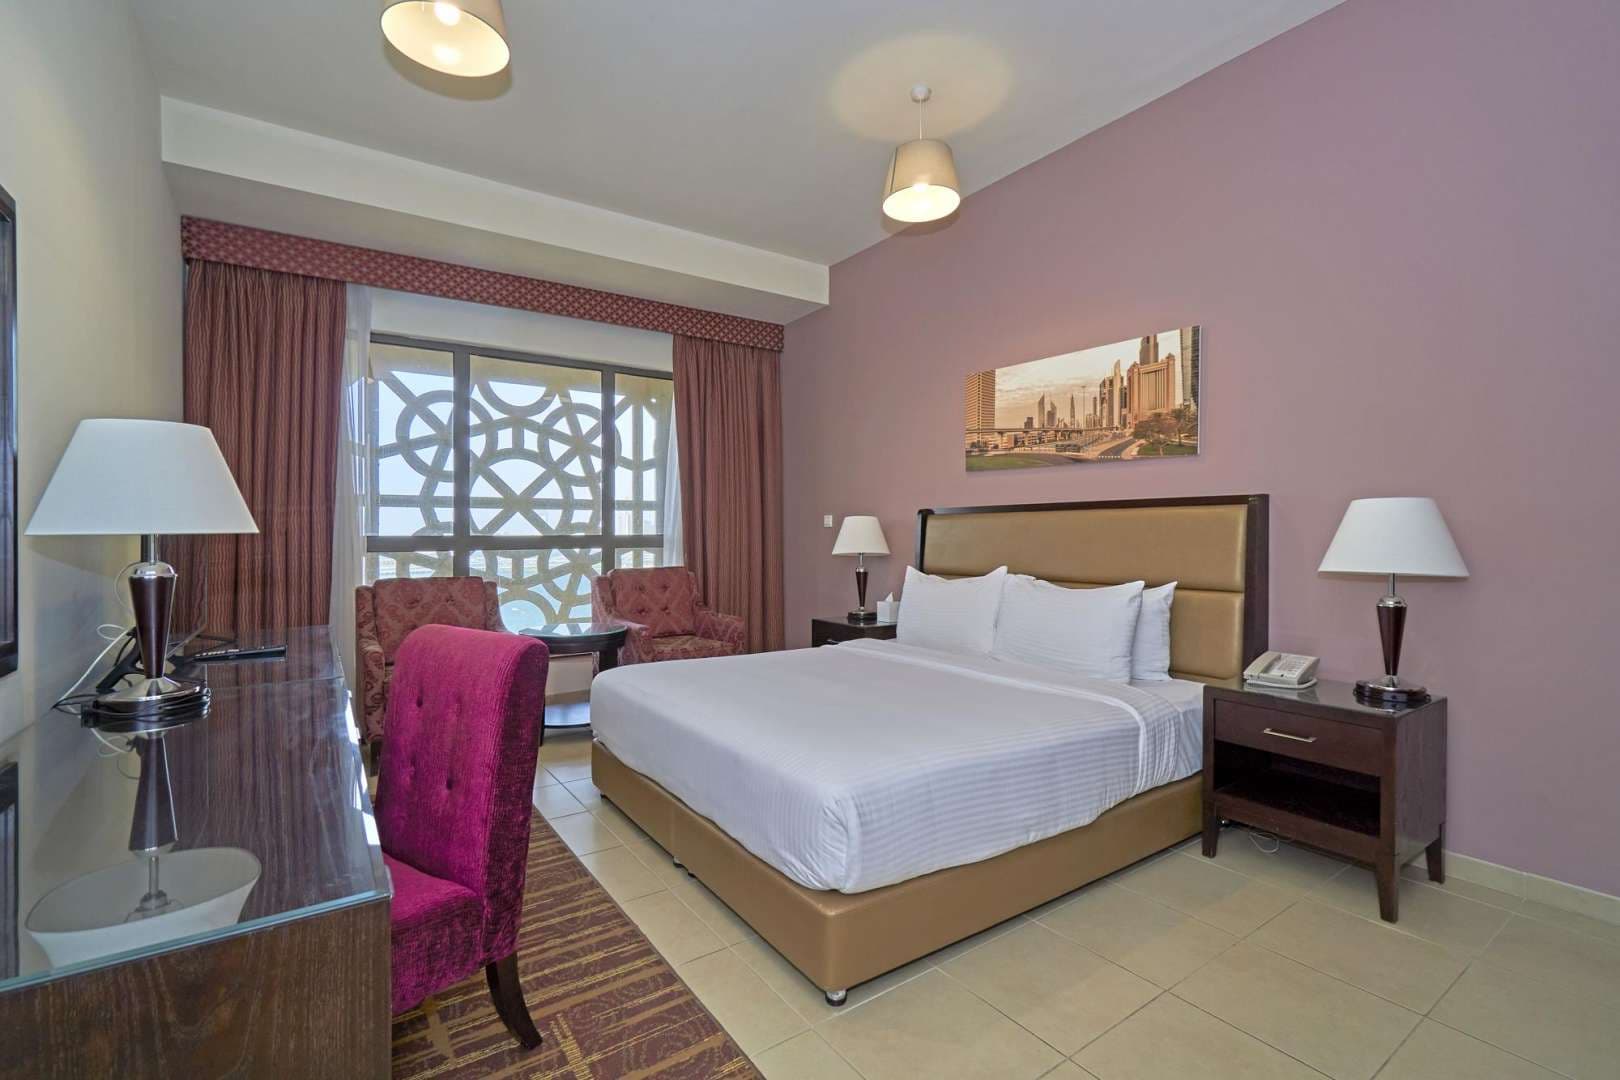 3 Bedroom Apartment For Rent Amwaj Lp05809 94248eb95b2e28.jpg